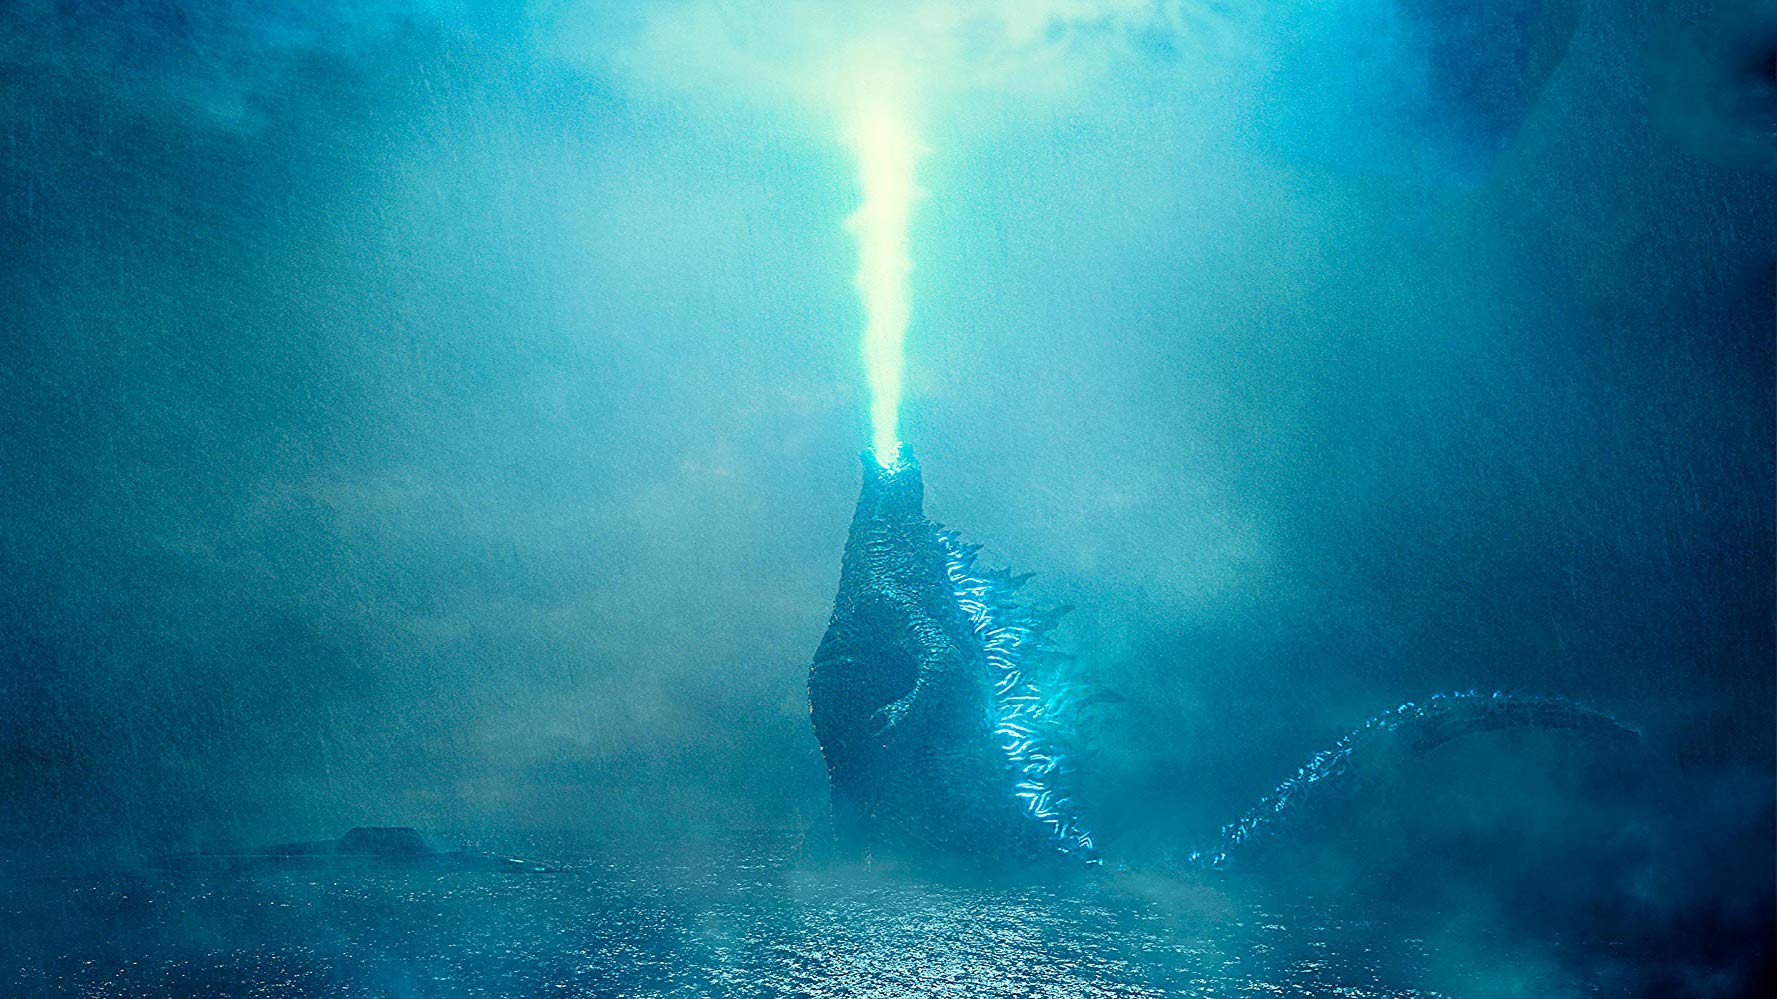 Godzilla: rey de los monstruos Dougherty - Crítica